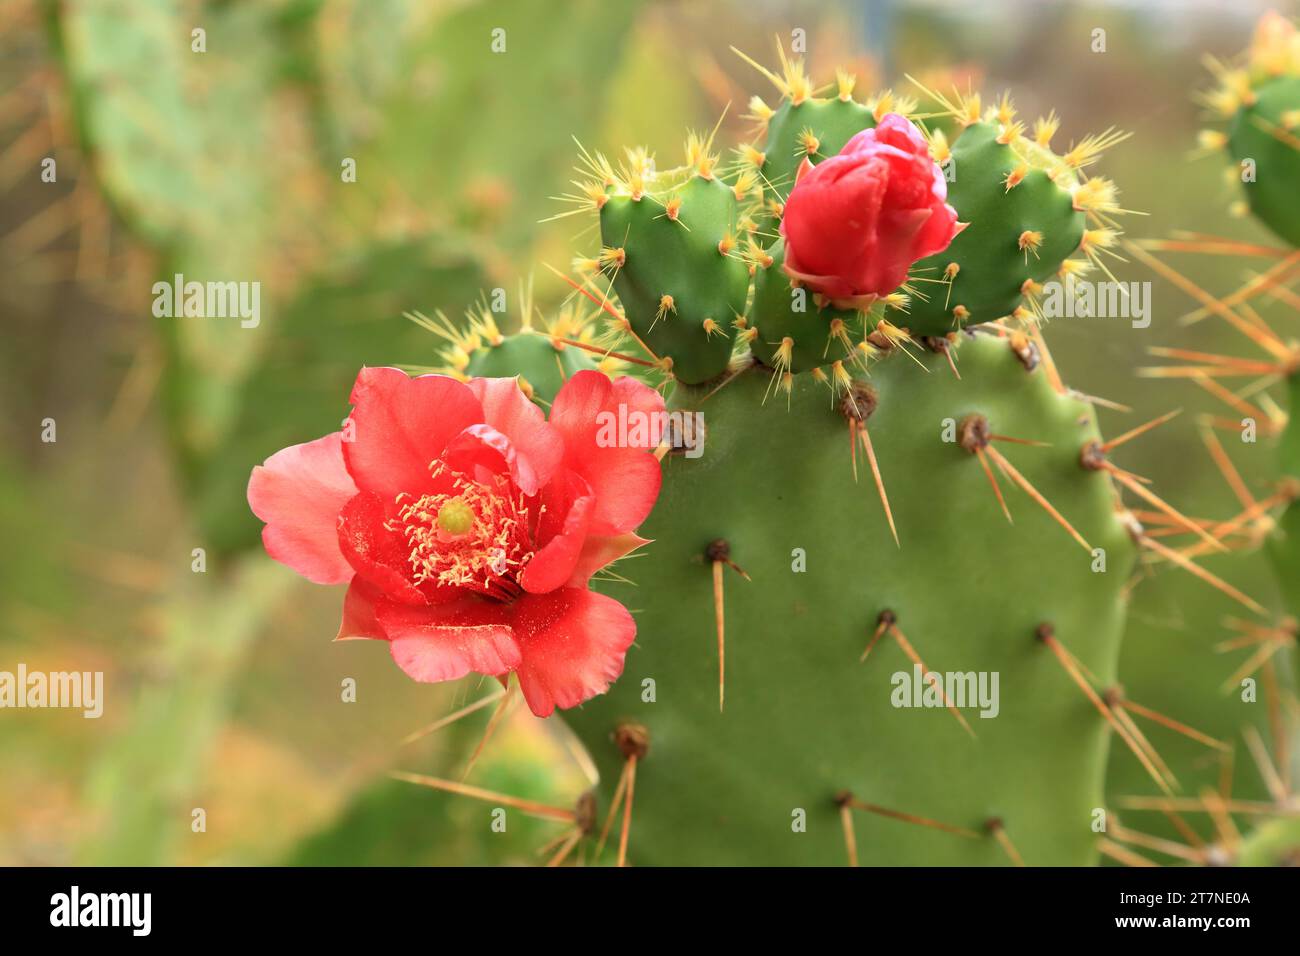 Cactus flower. Opuntia ficus-indica cactus with flowers. Stock Photo